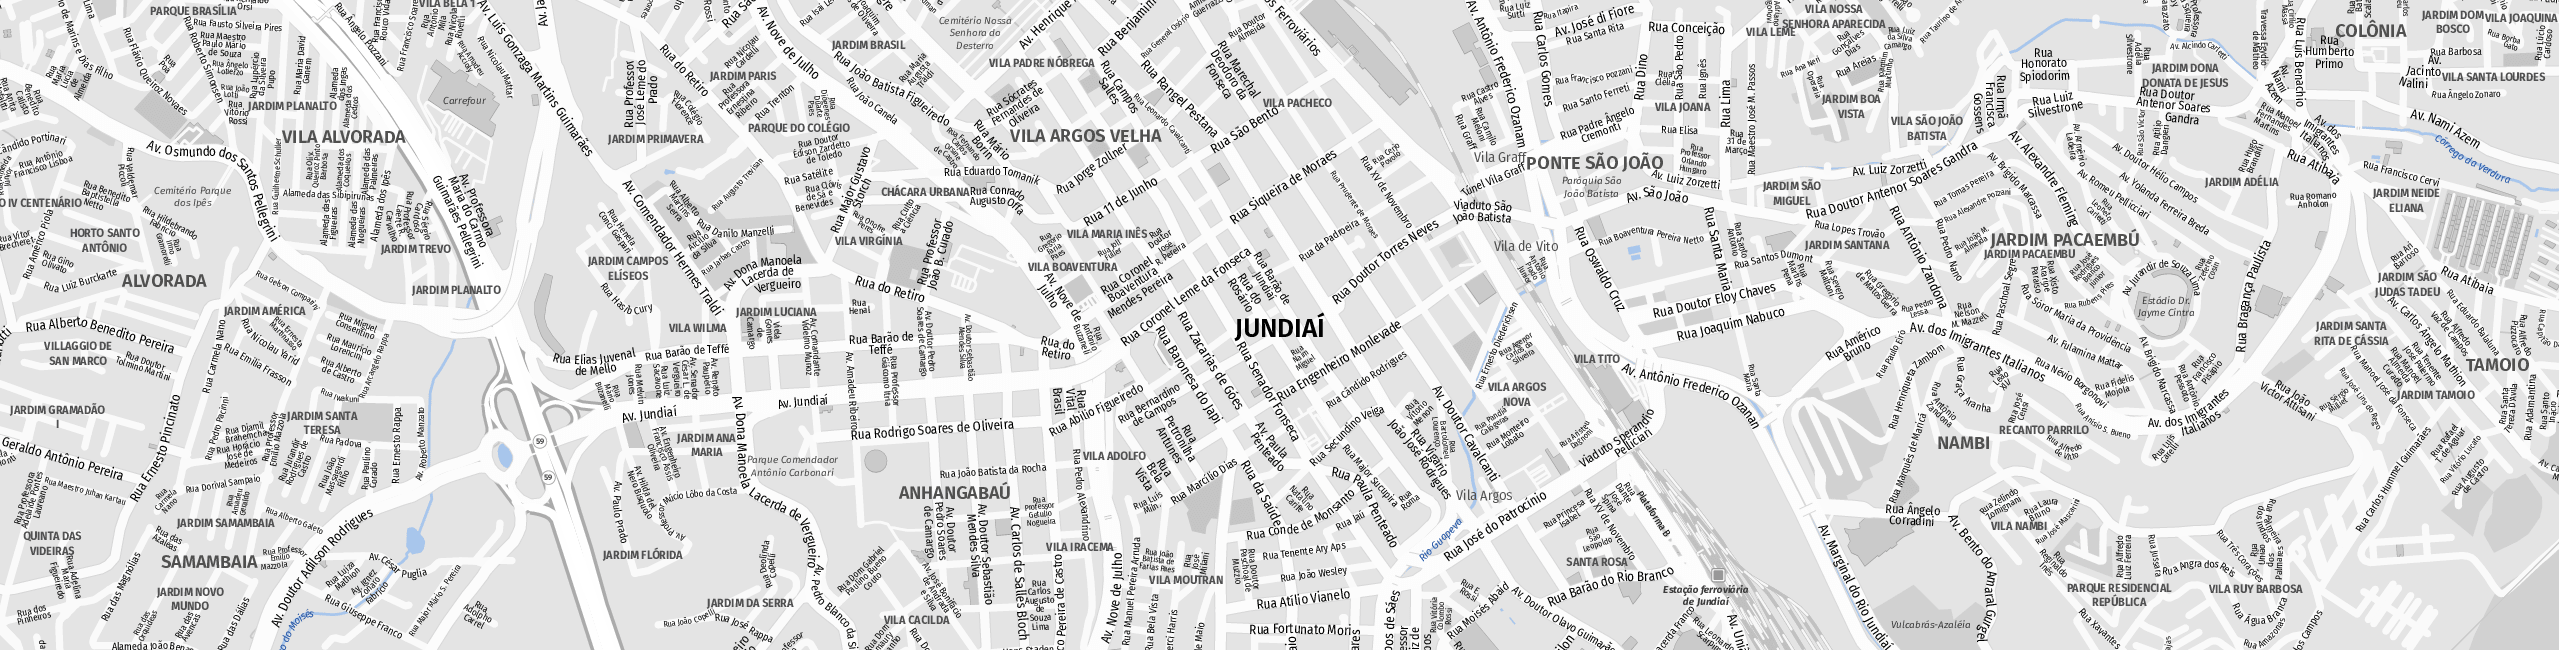 Stadtplan Jundiaí zum Downloaden.